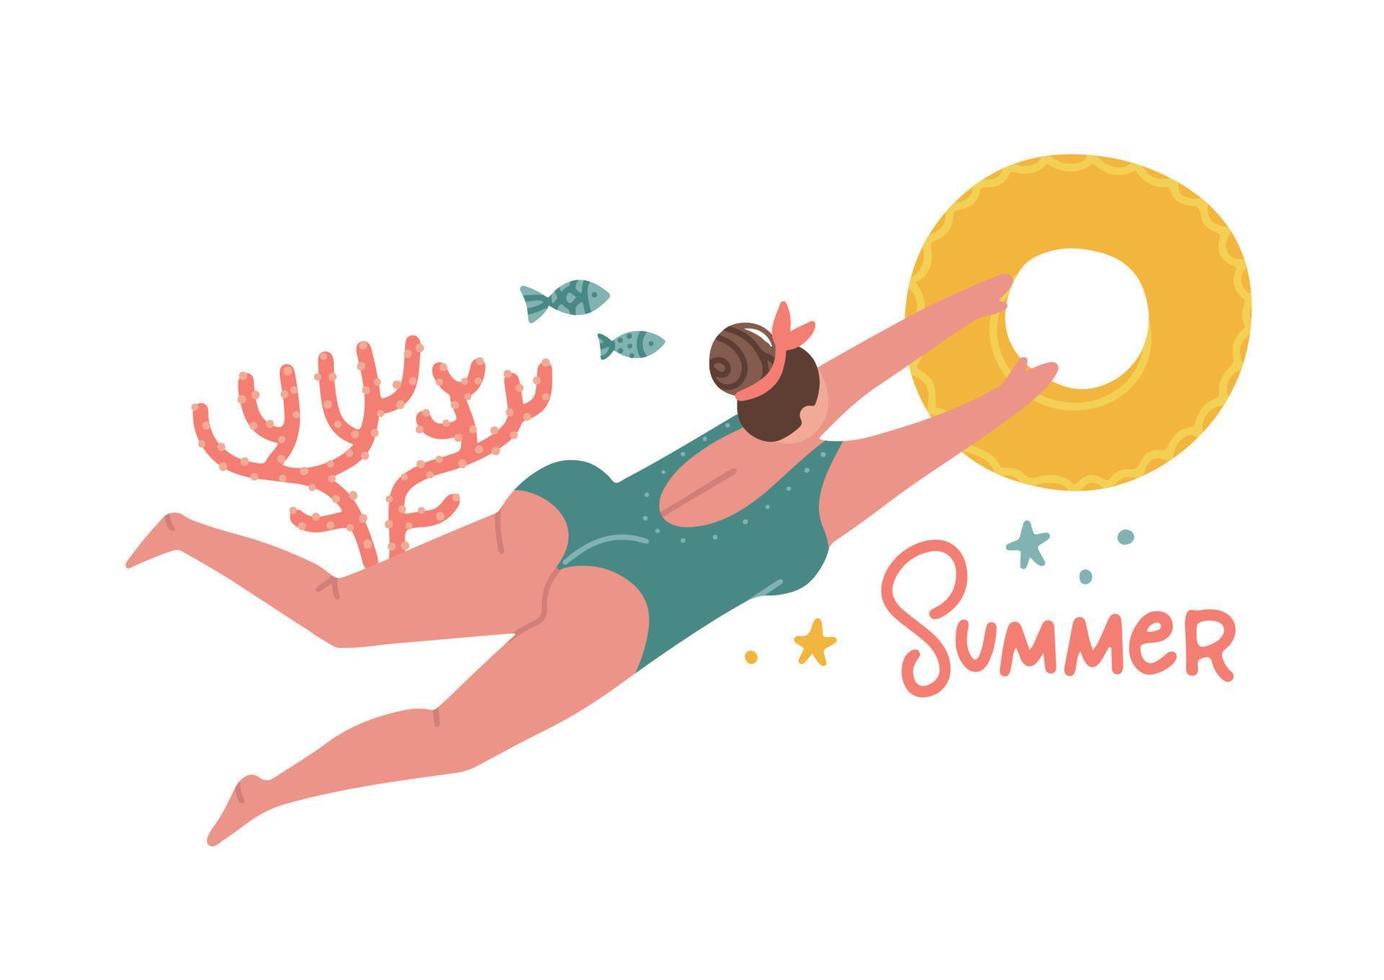 strandresort activiteit. moderne concept illustratie van een vrouw die zwembroek draagt, zwemmen in zee met rubberen ring. platte hand getekende vector trint sjabloon voor t-shirts met belettering woord zomer.